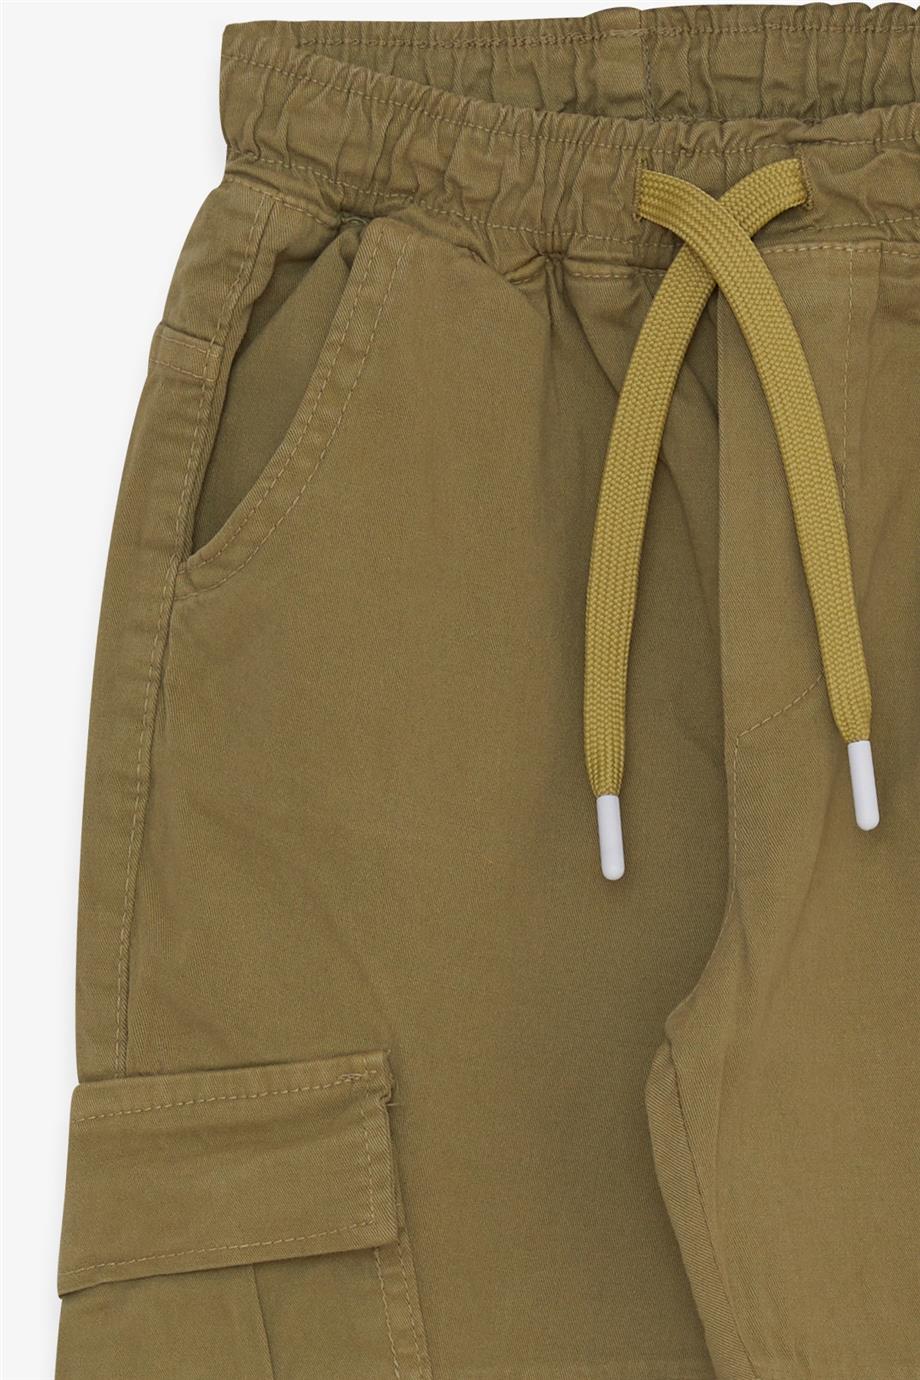 Erkek Çocuk Kot Pantolon Beli Lastikli Cepli Haki Yeşil 8-14 Yaş - Şık  Çocuk Pantolonları | Breeze